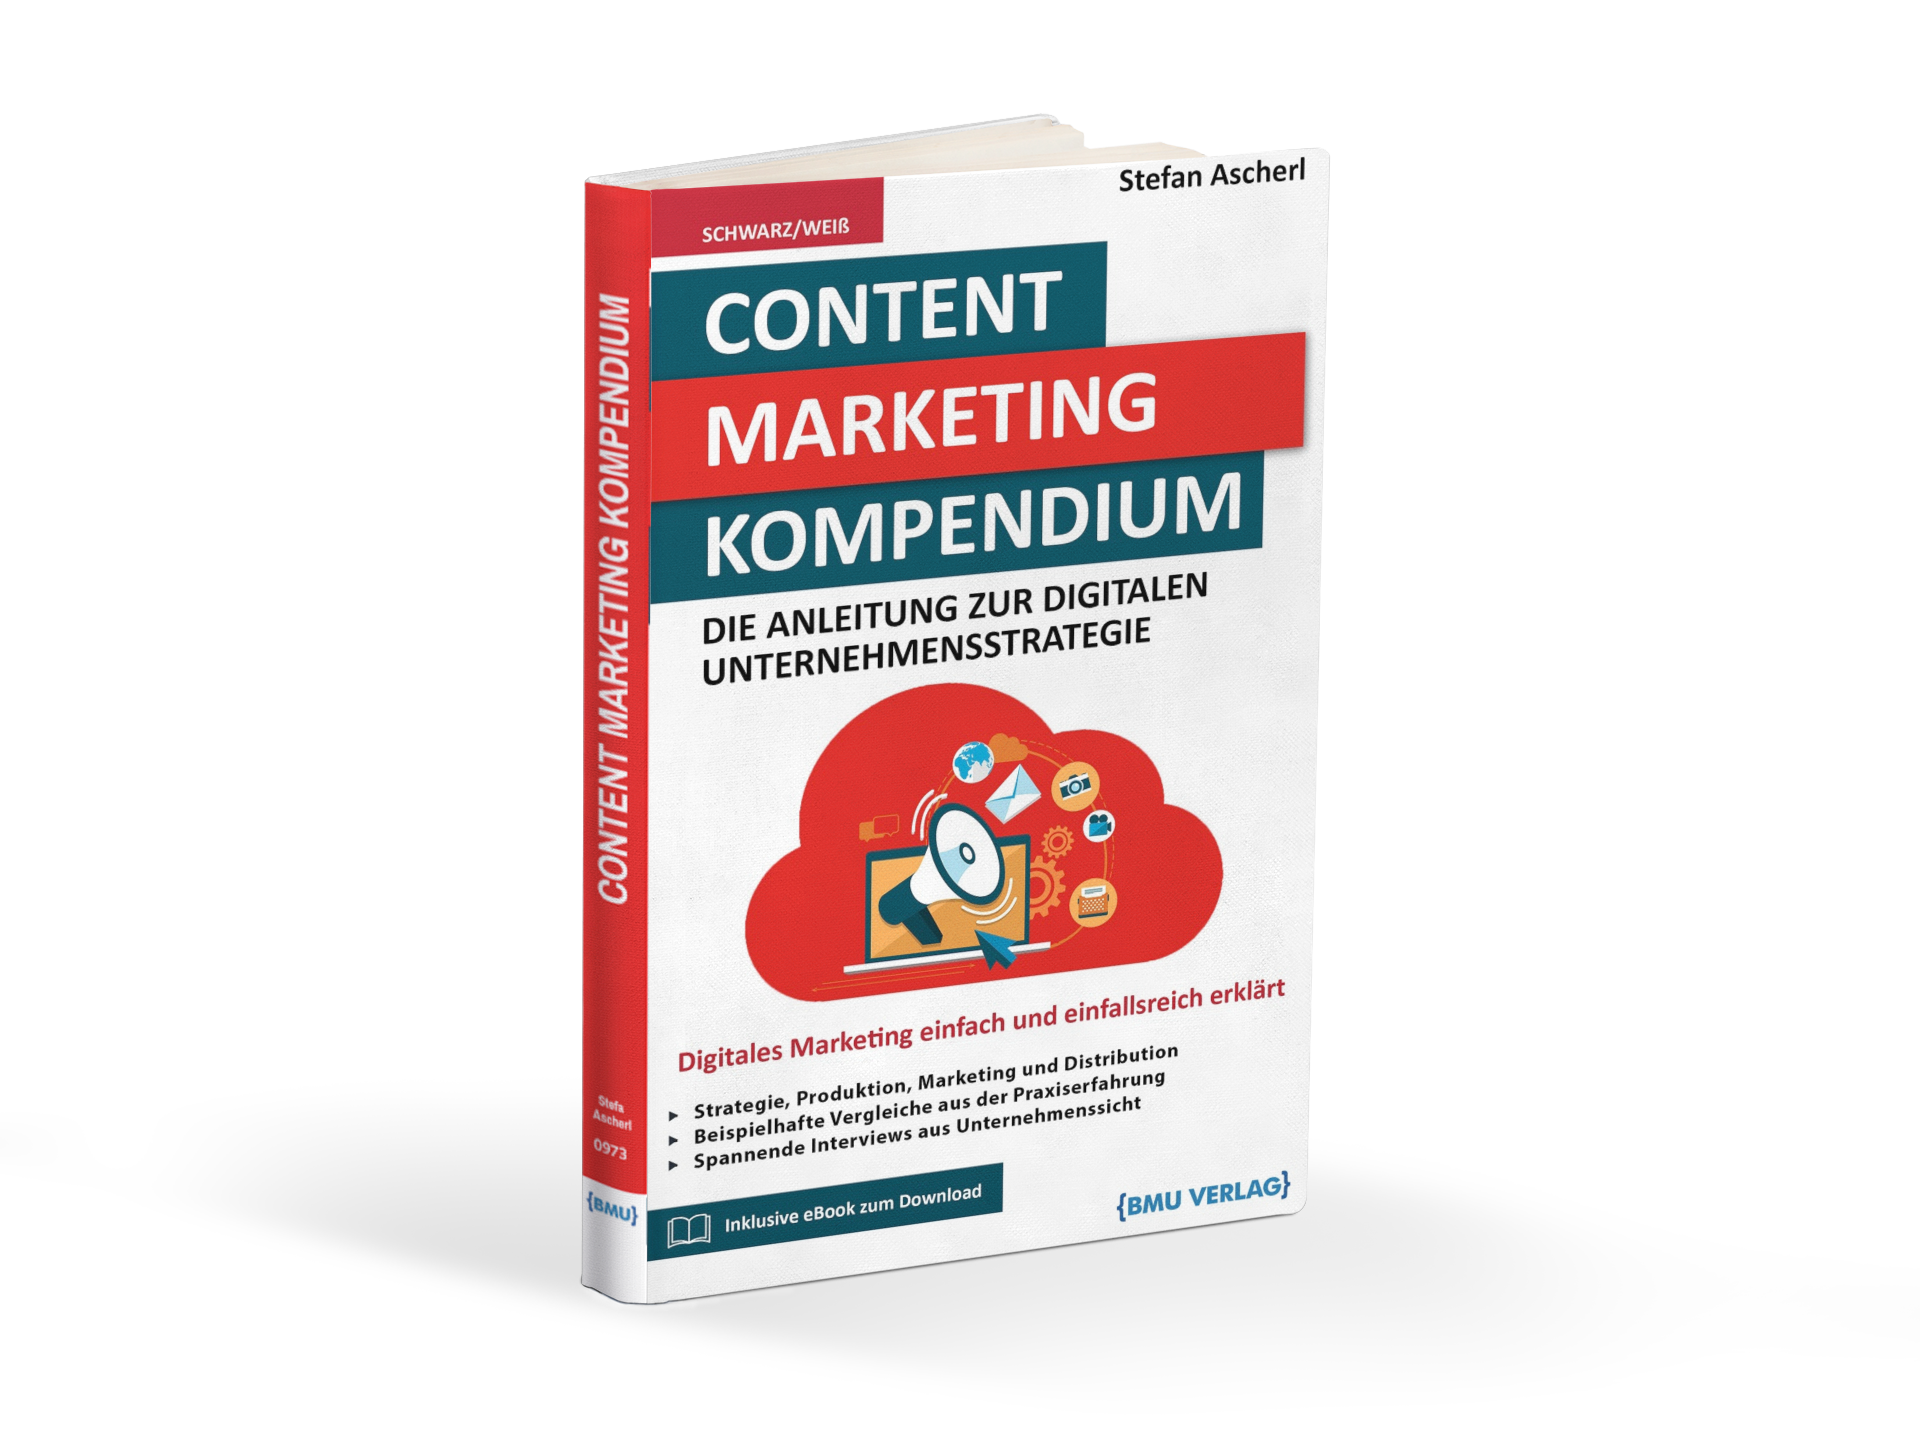 Content Marketing Kompendium: Die Anleitung zur digitalen Unternehmensstrategie